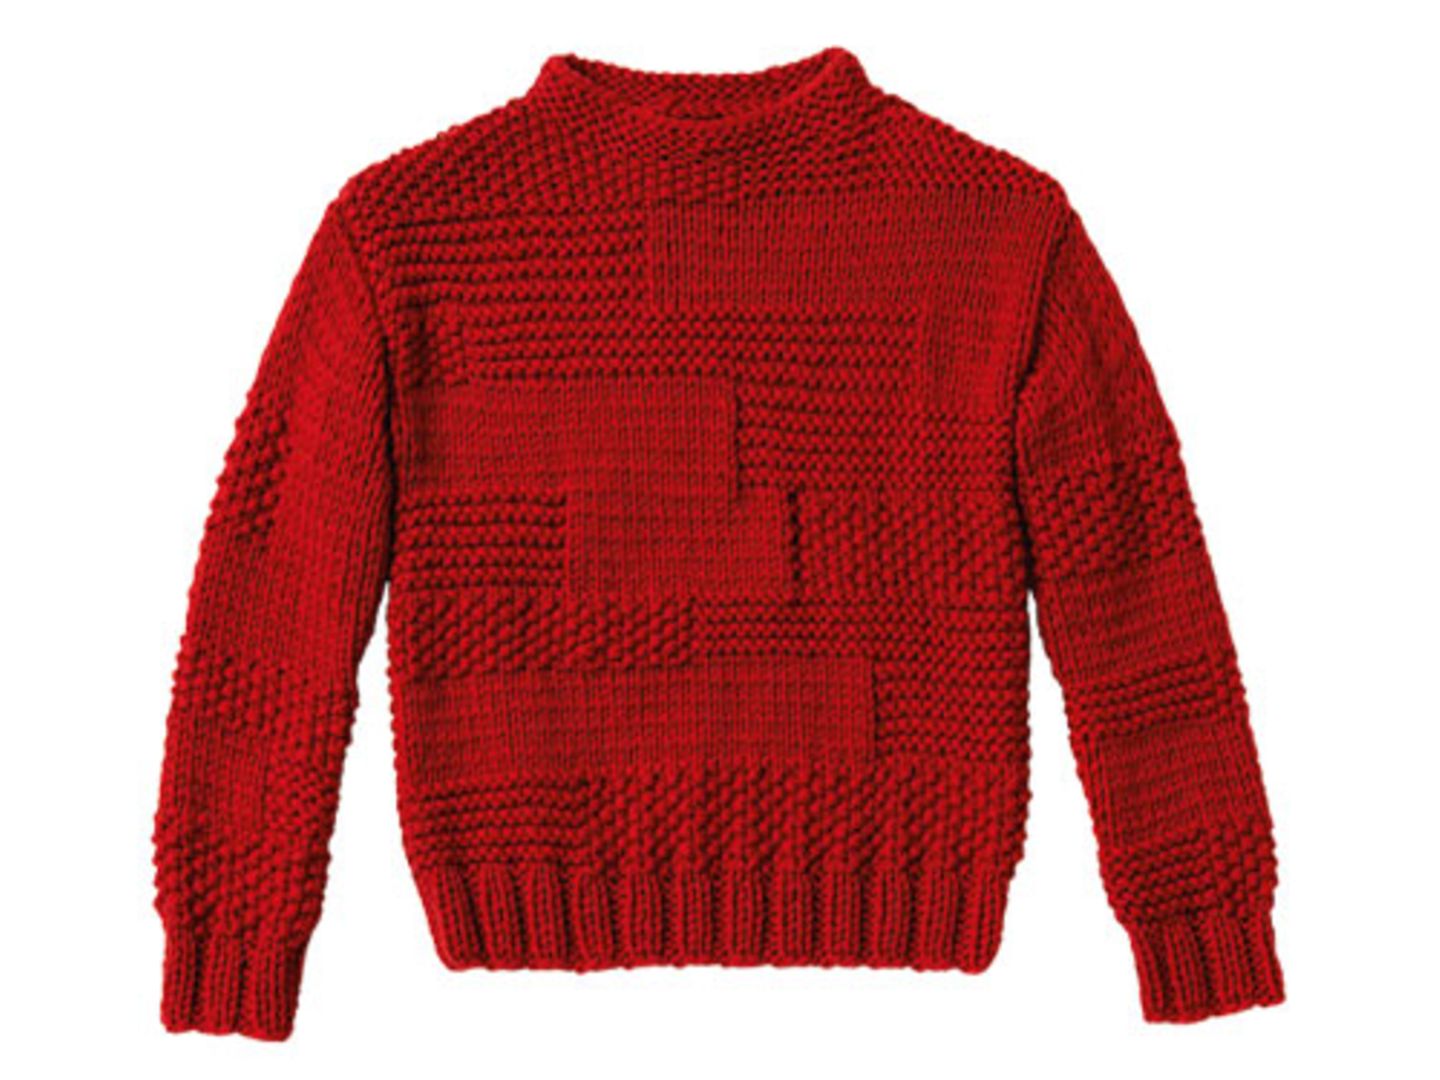 Glatt rechts, kraus rechts - so entsteht das Perlmuster, mit dem Sie diesen Pullover im Mustermix stricken. Sieht super aus, braucht aber etwas Zeit.  Zur Anleitung: Pullover im Mustermix stricken.